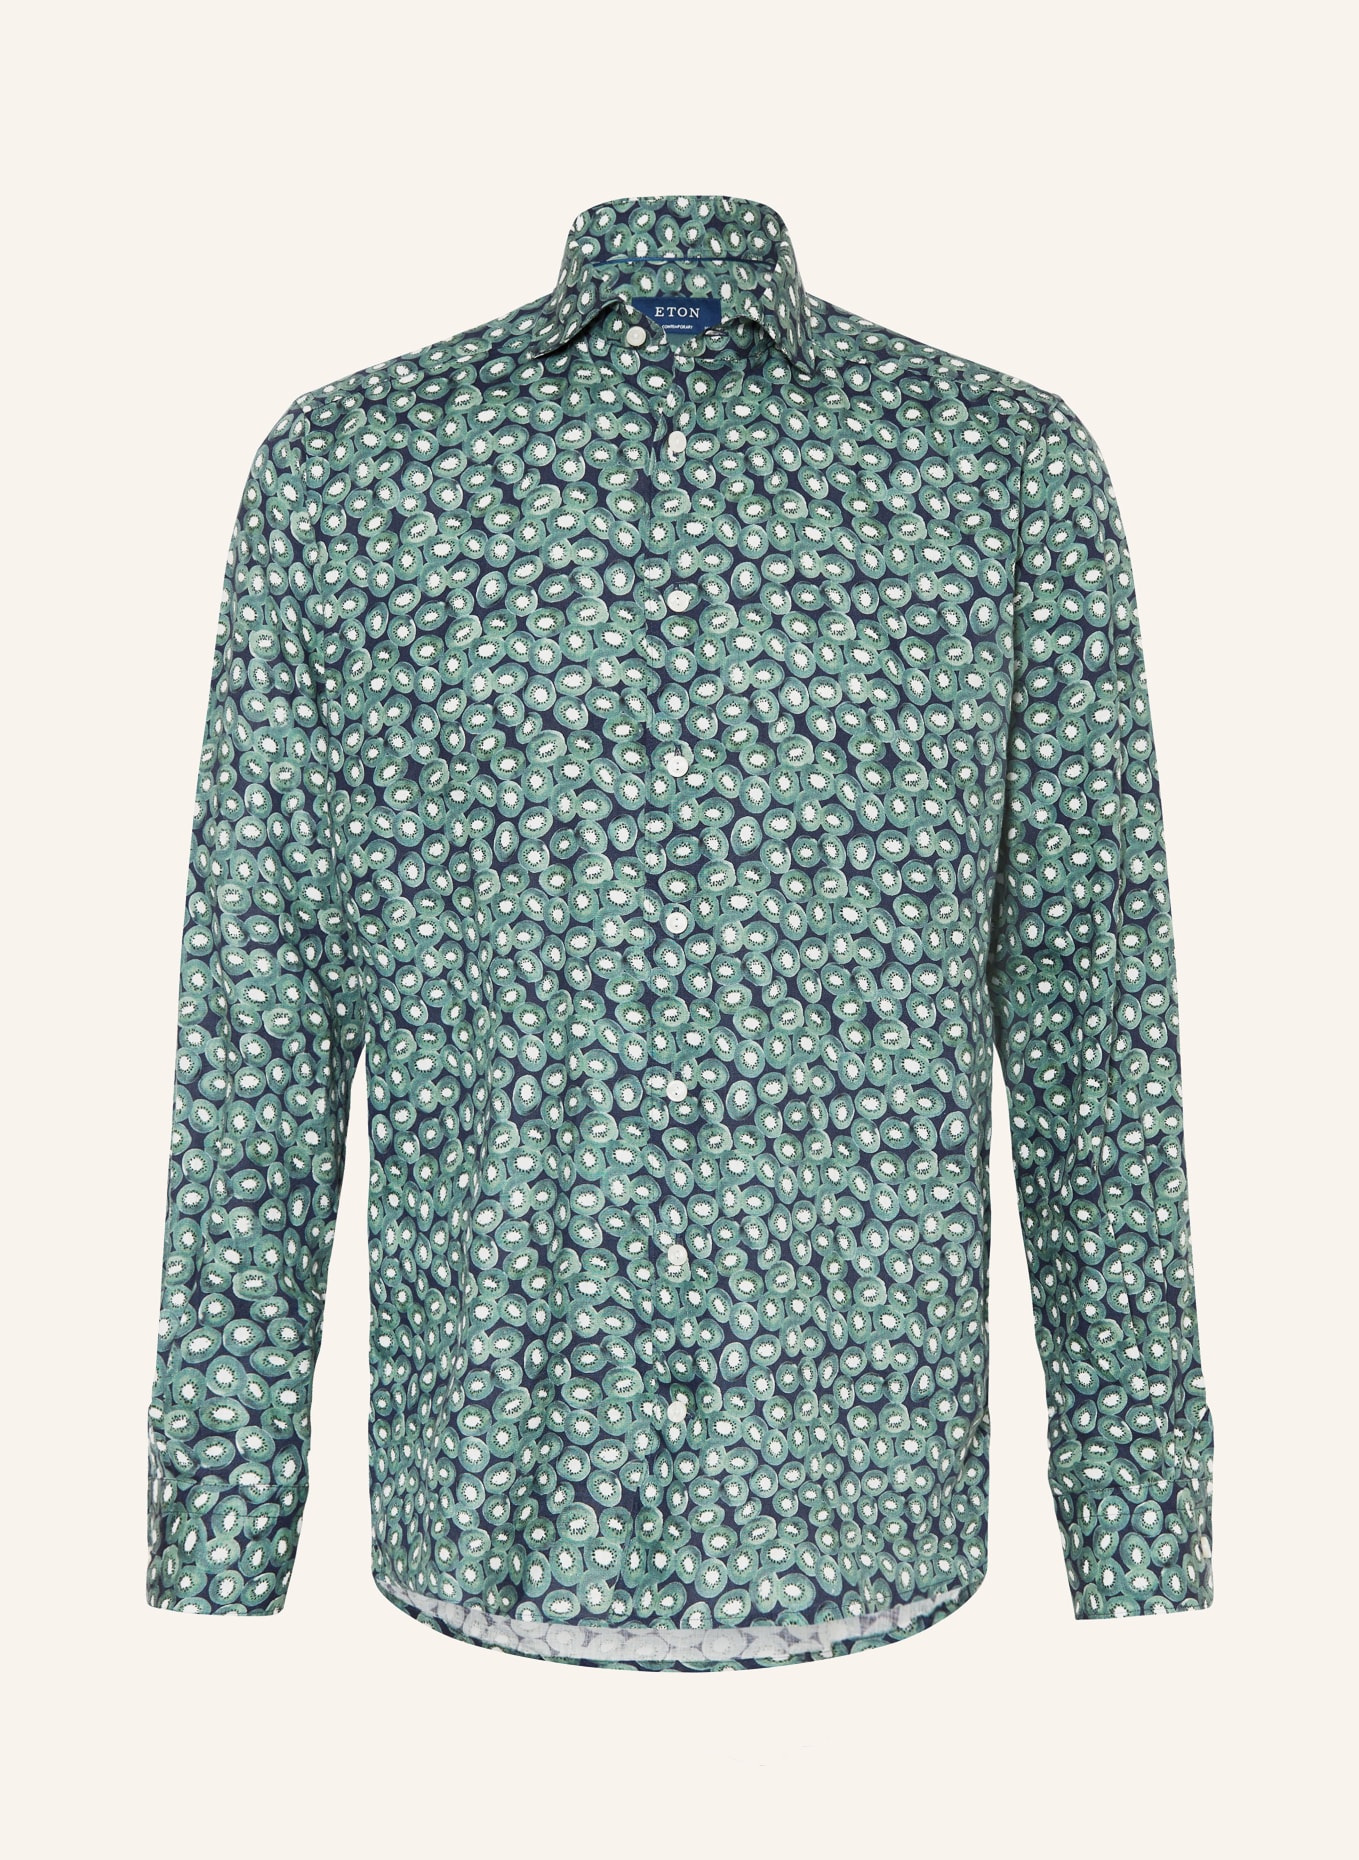 ETON Leinenhemd Comfort Fit, Farbe: GRÜN/ DUNKELBLAU/ WEISS (Bild 1)